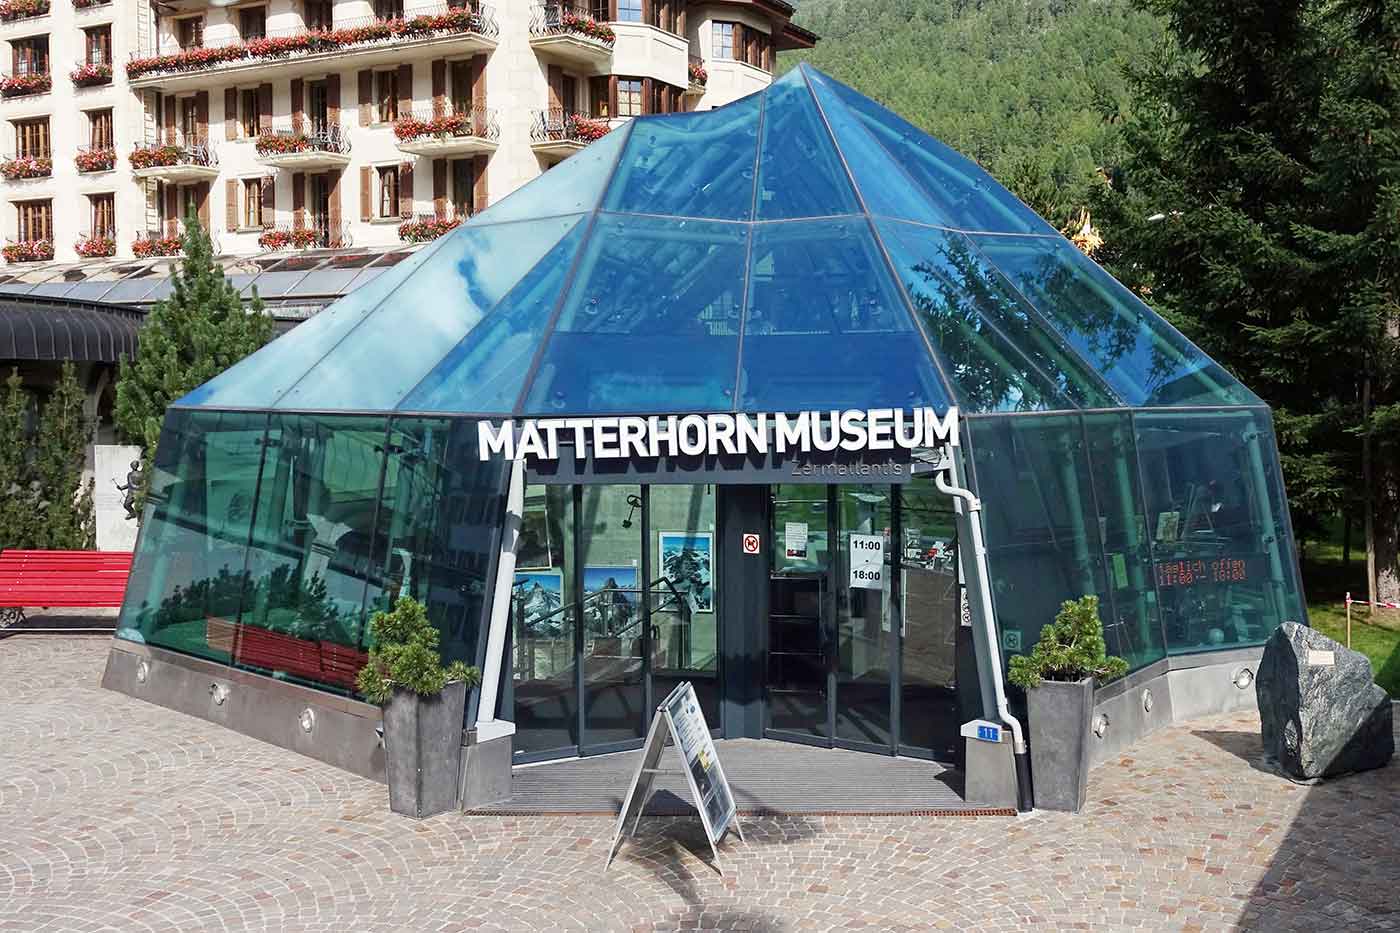 Matterhorn Museum